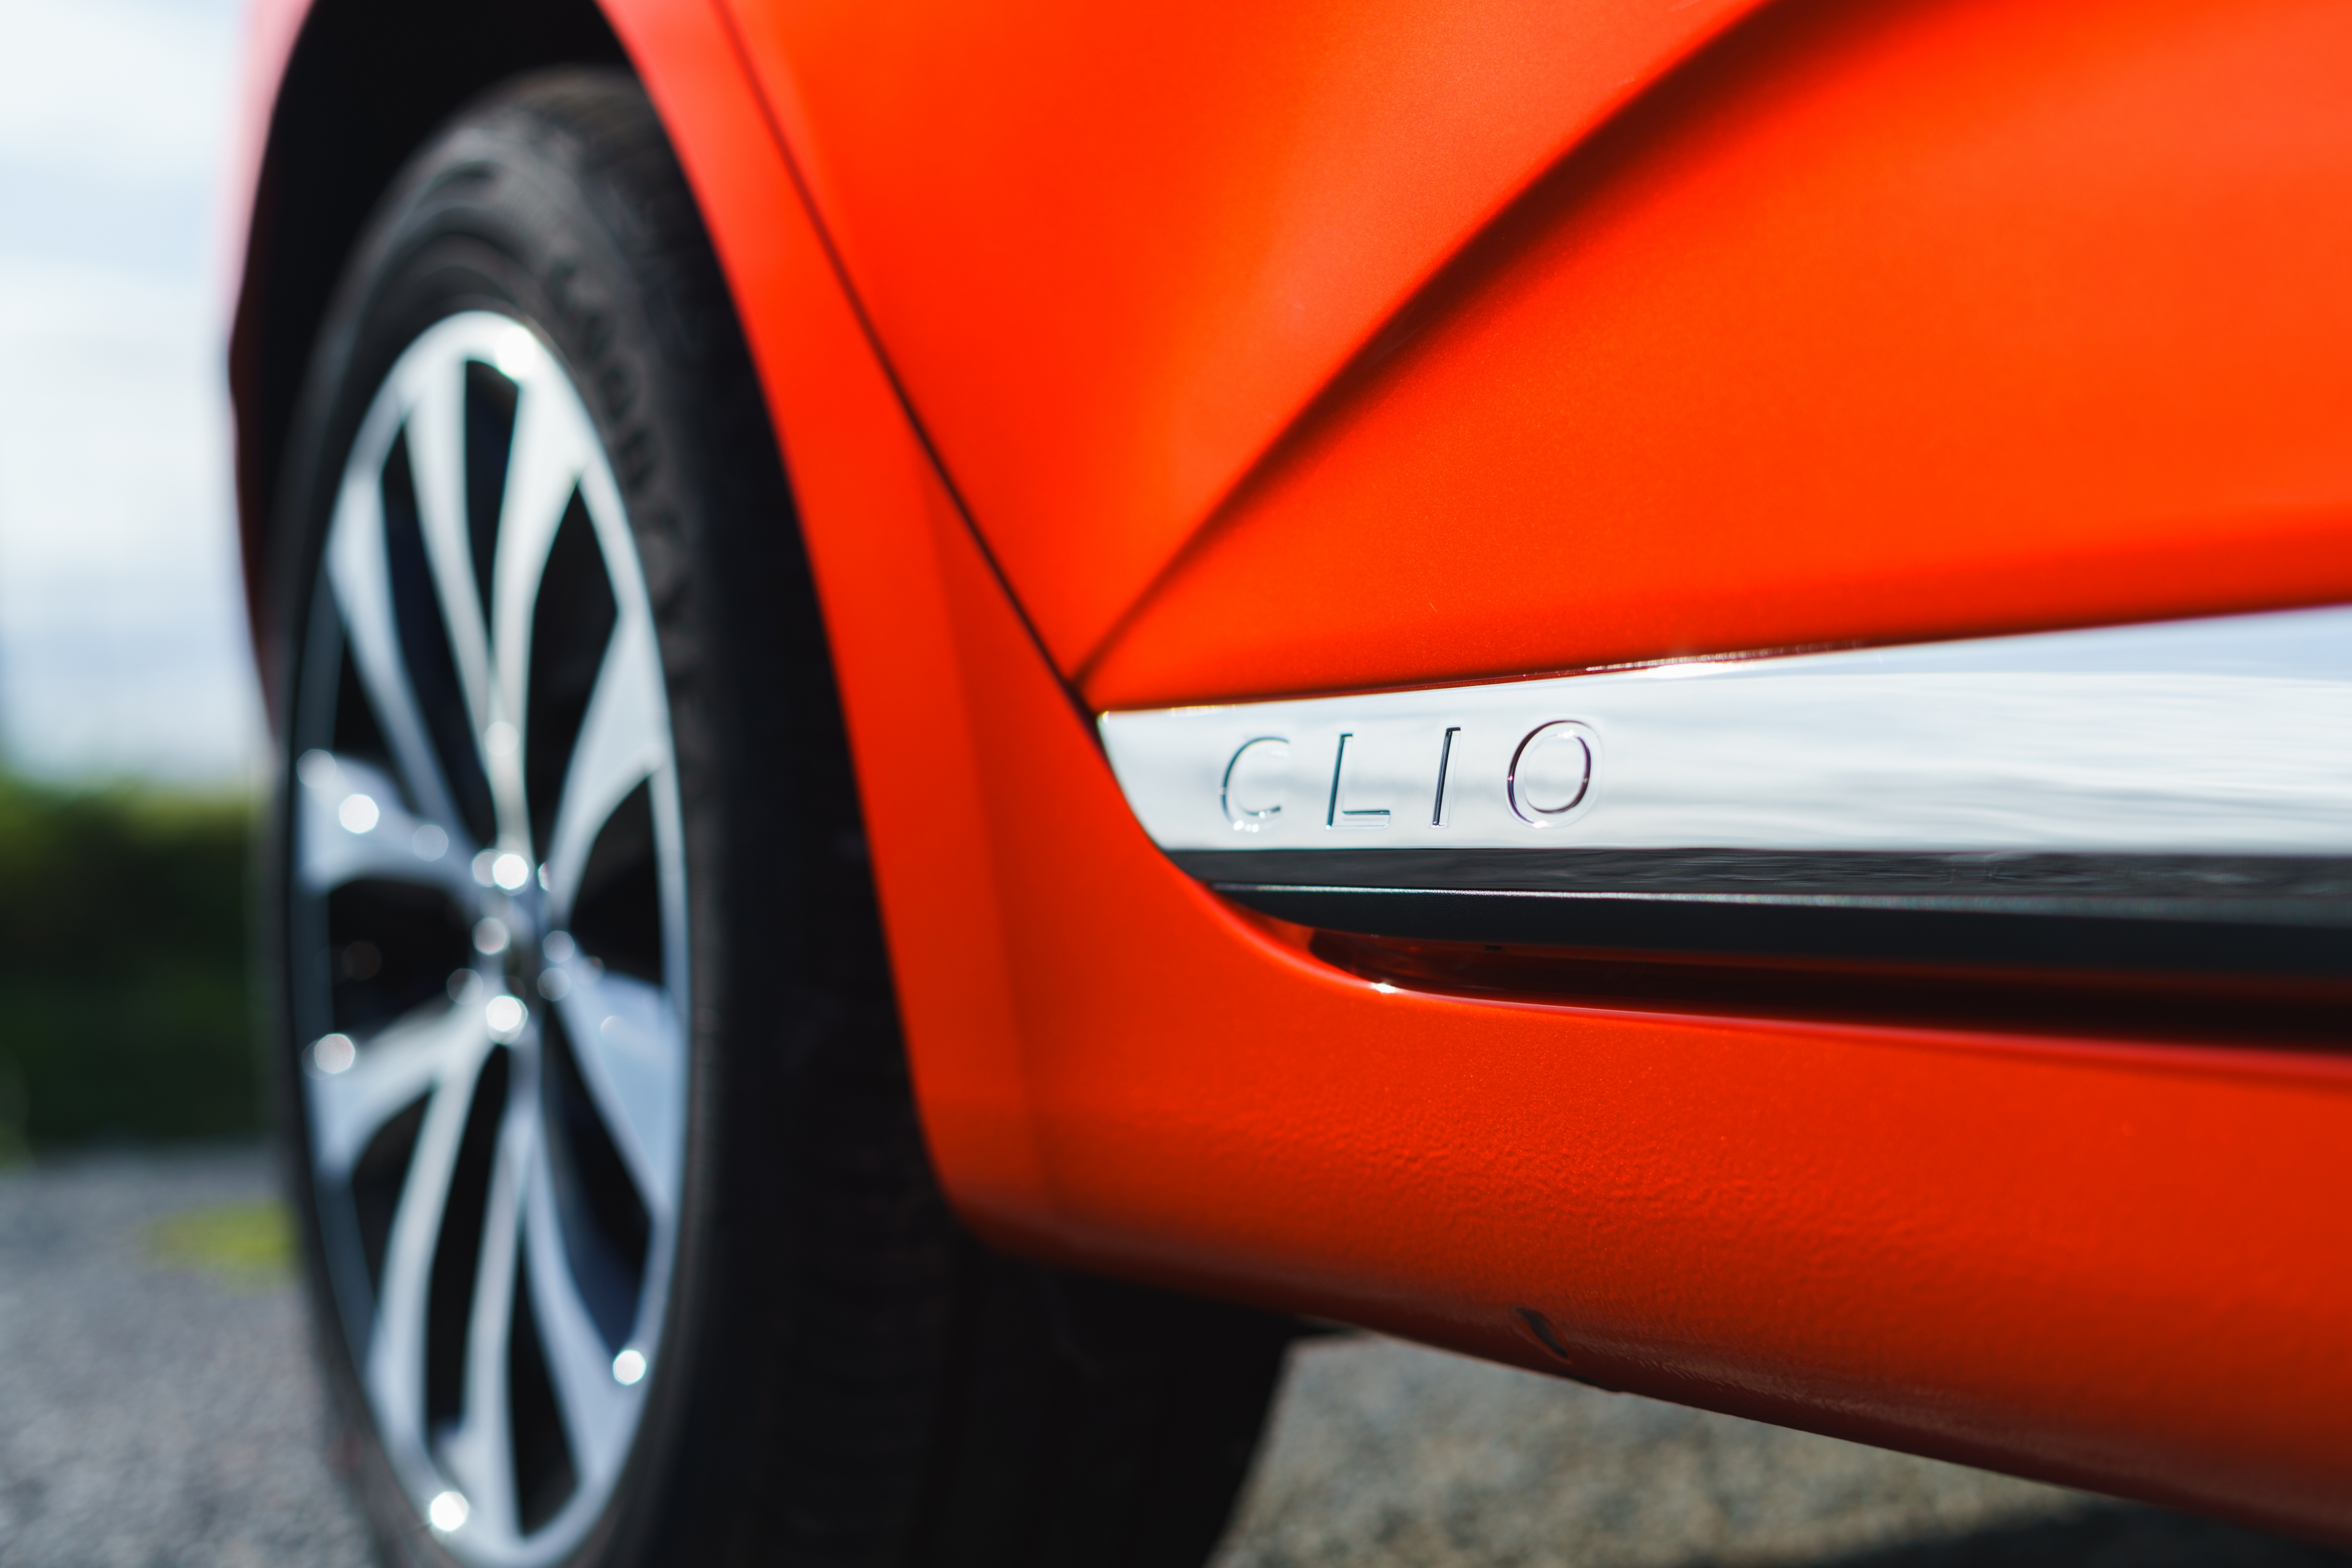 Renault Clio exterior detail